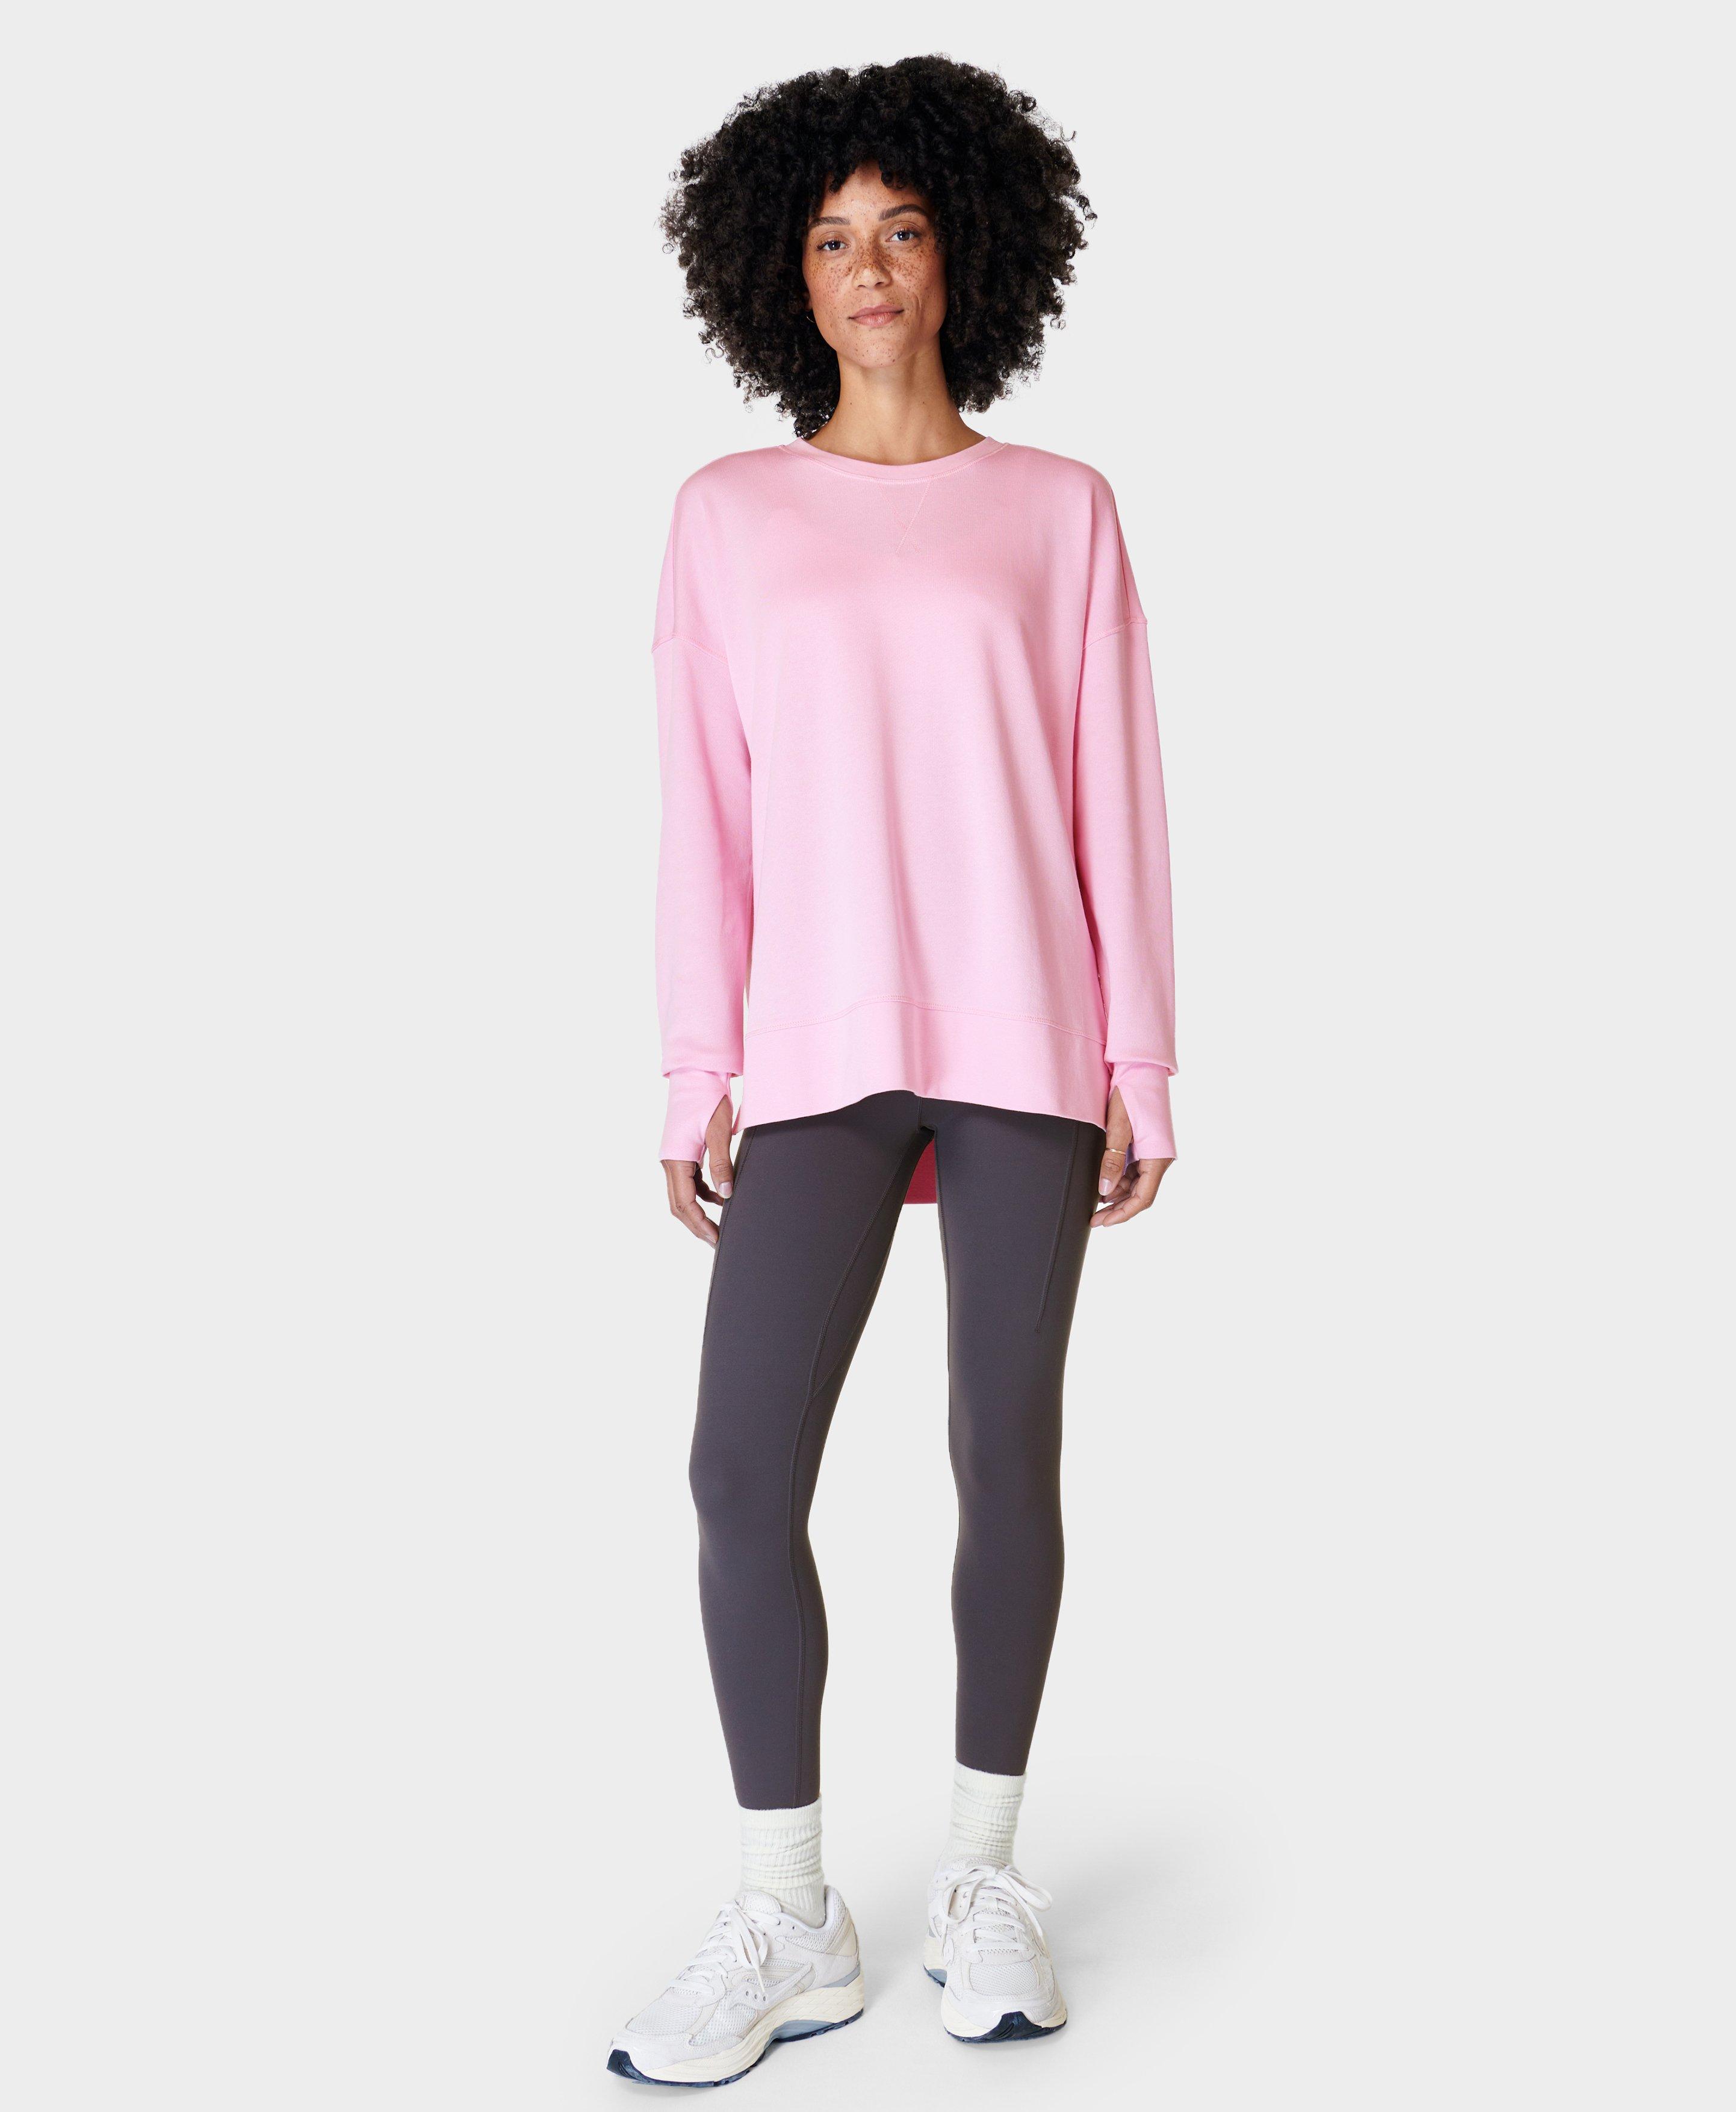 After Class Longline Sweatshirt - Chalk Pink, Women's Sweaters + Hoodies